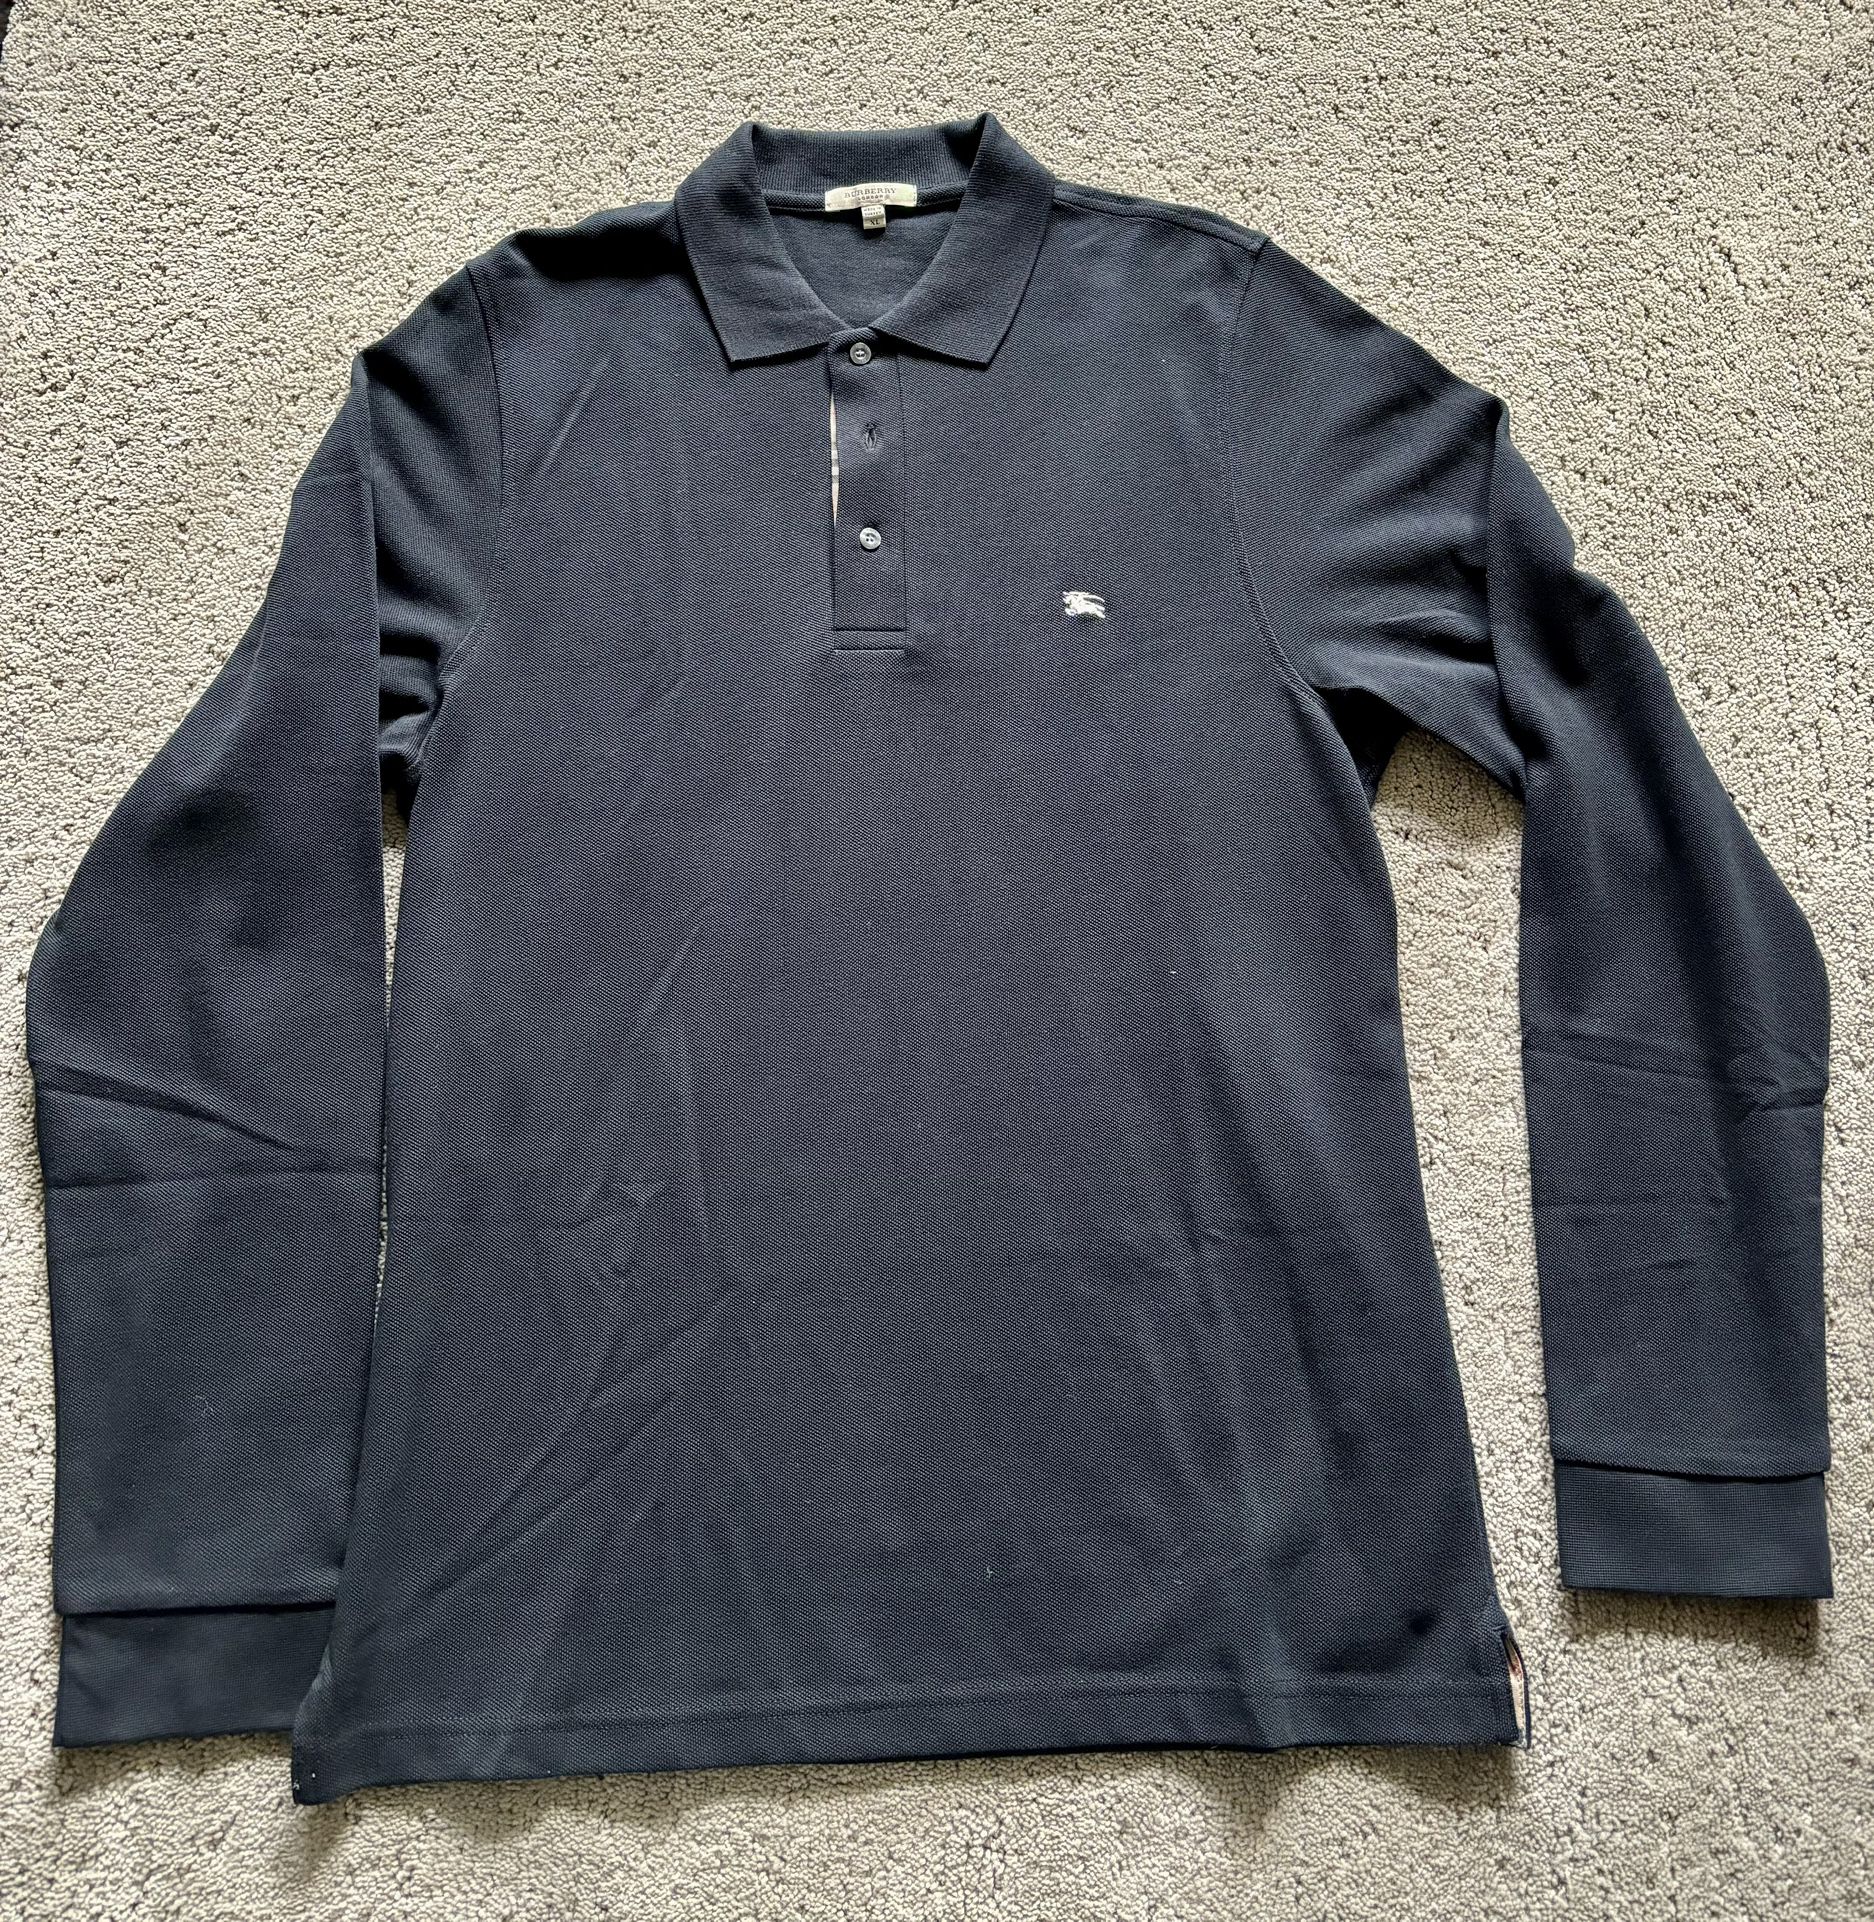 Burberry men’s long sleeve shirt, size XL